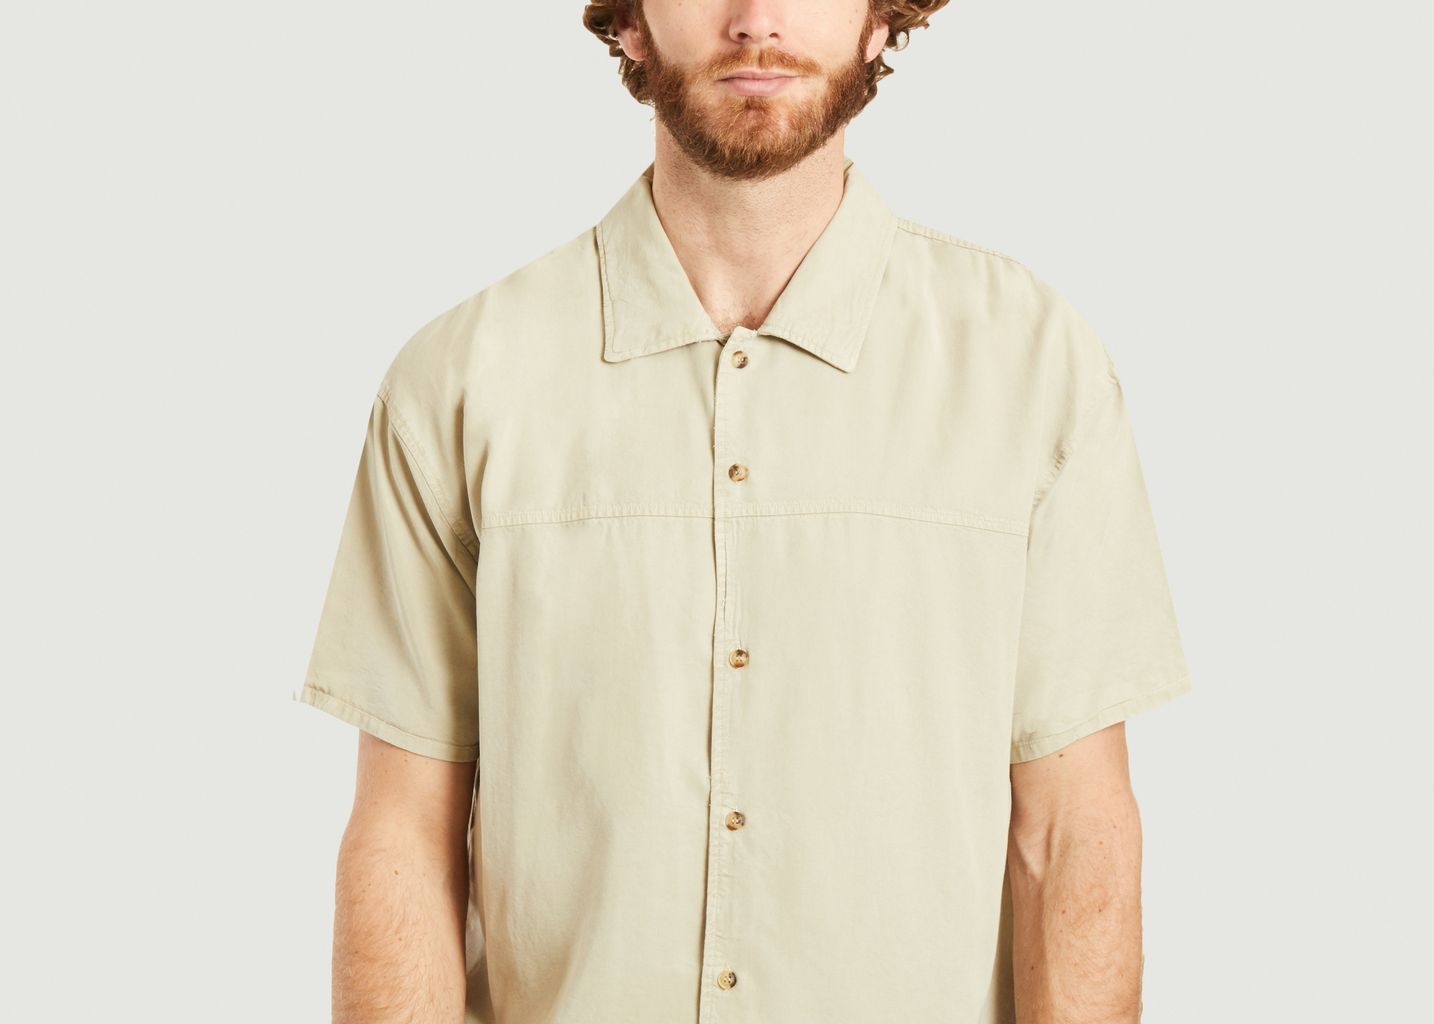 Zurabay Shirt - American Vintage